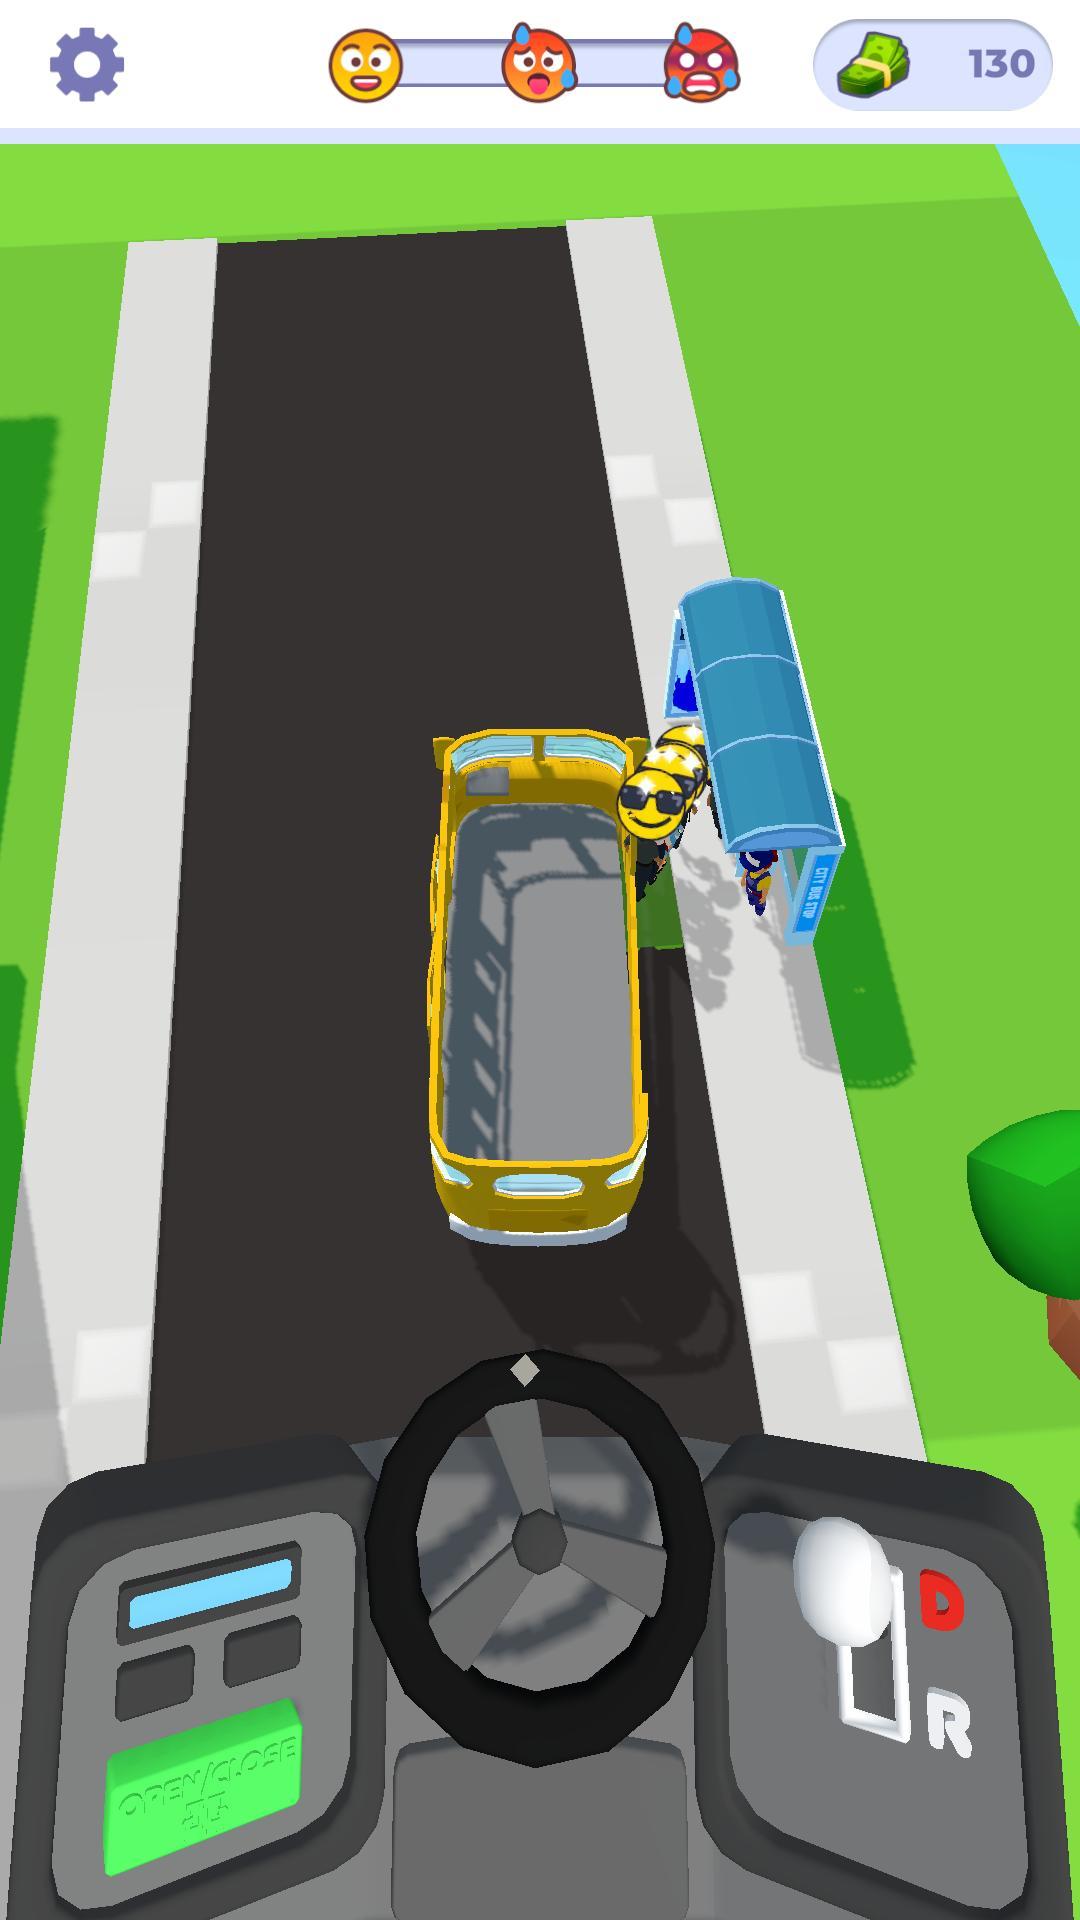 Screenshot 1 of バス運転シミュレータのアイドル状態 1.0.1